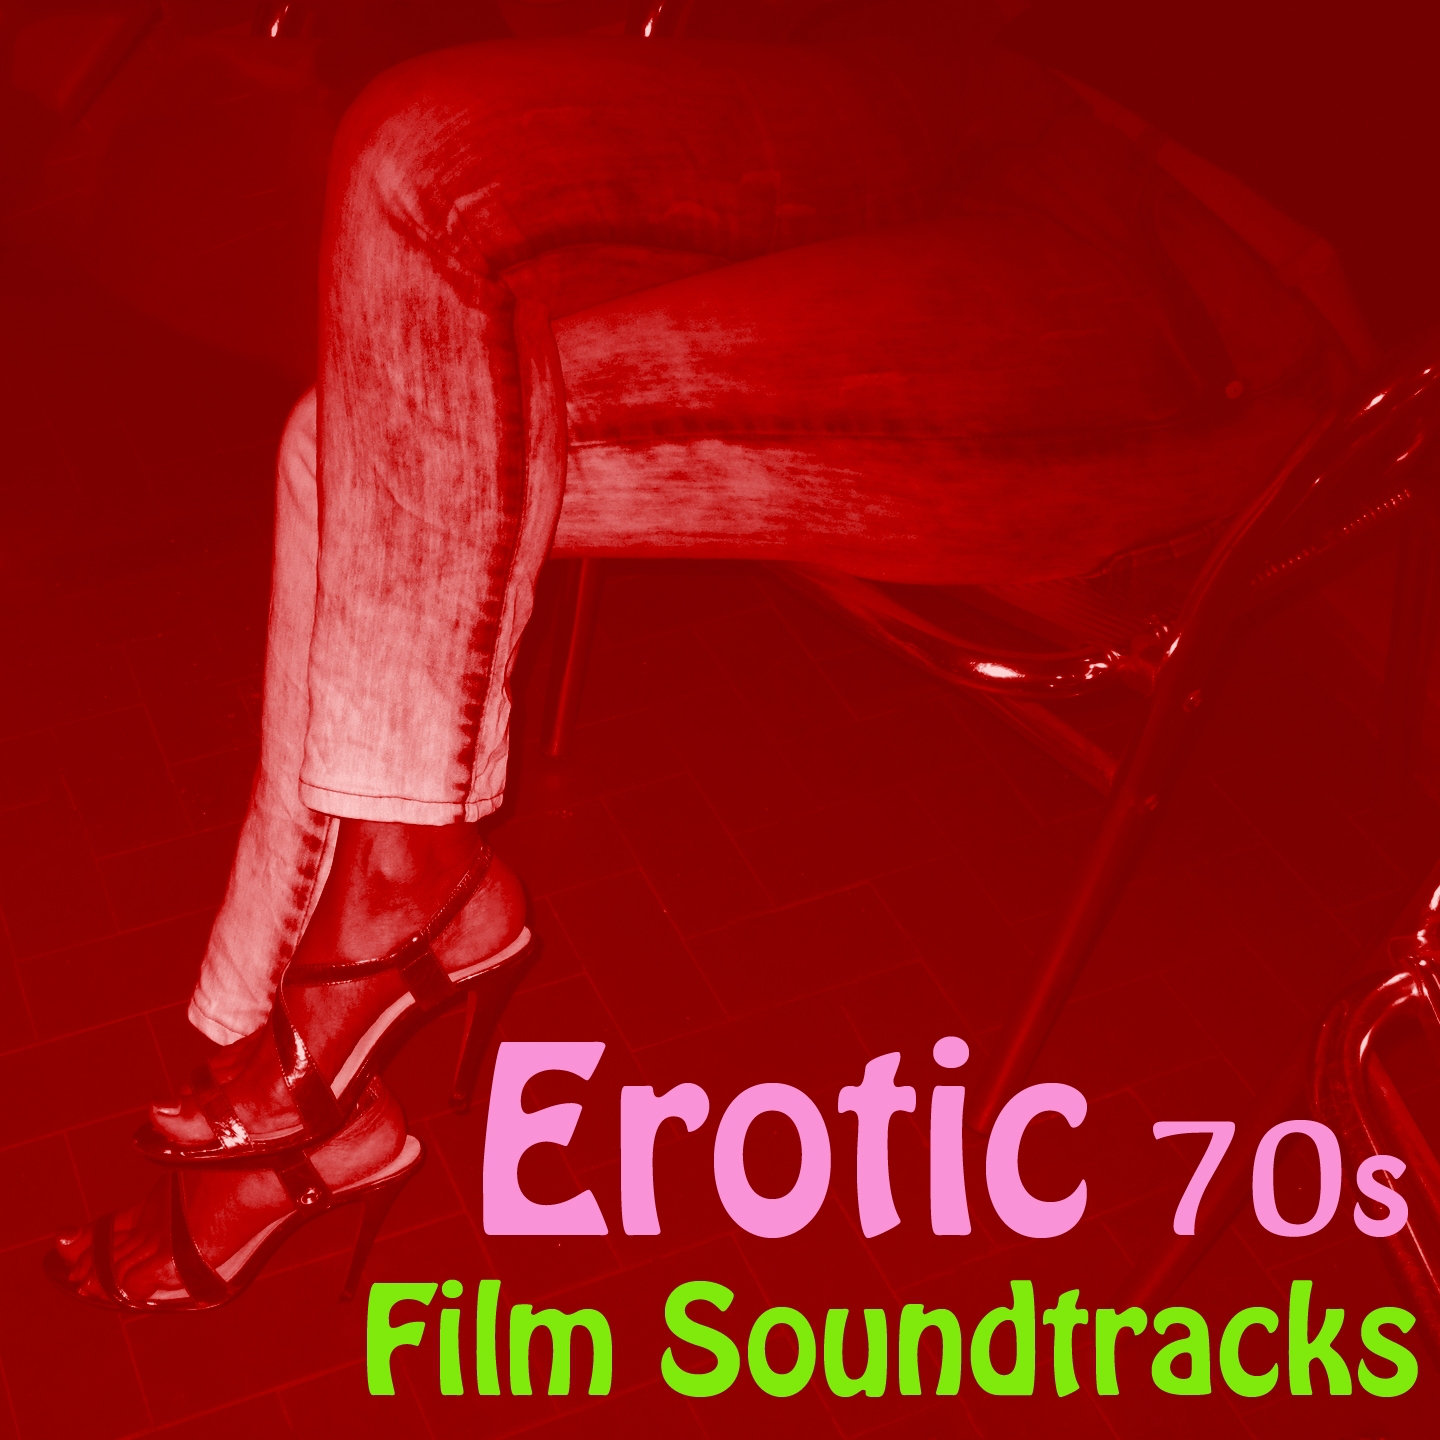 Erotic 70s Mix For Film Soundtracks музыка из фильма